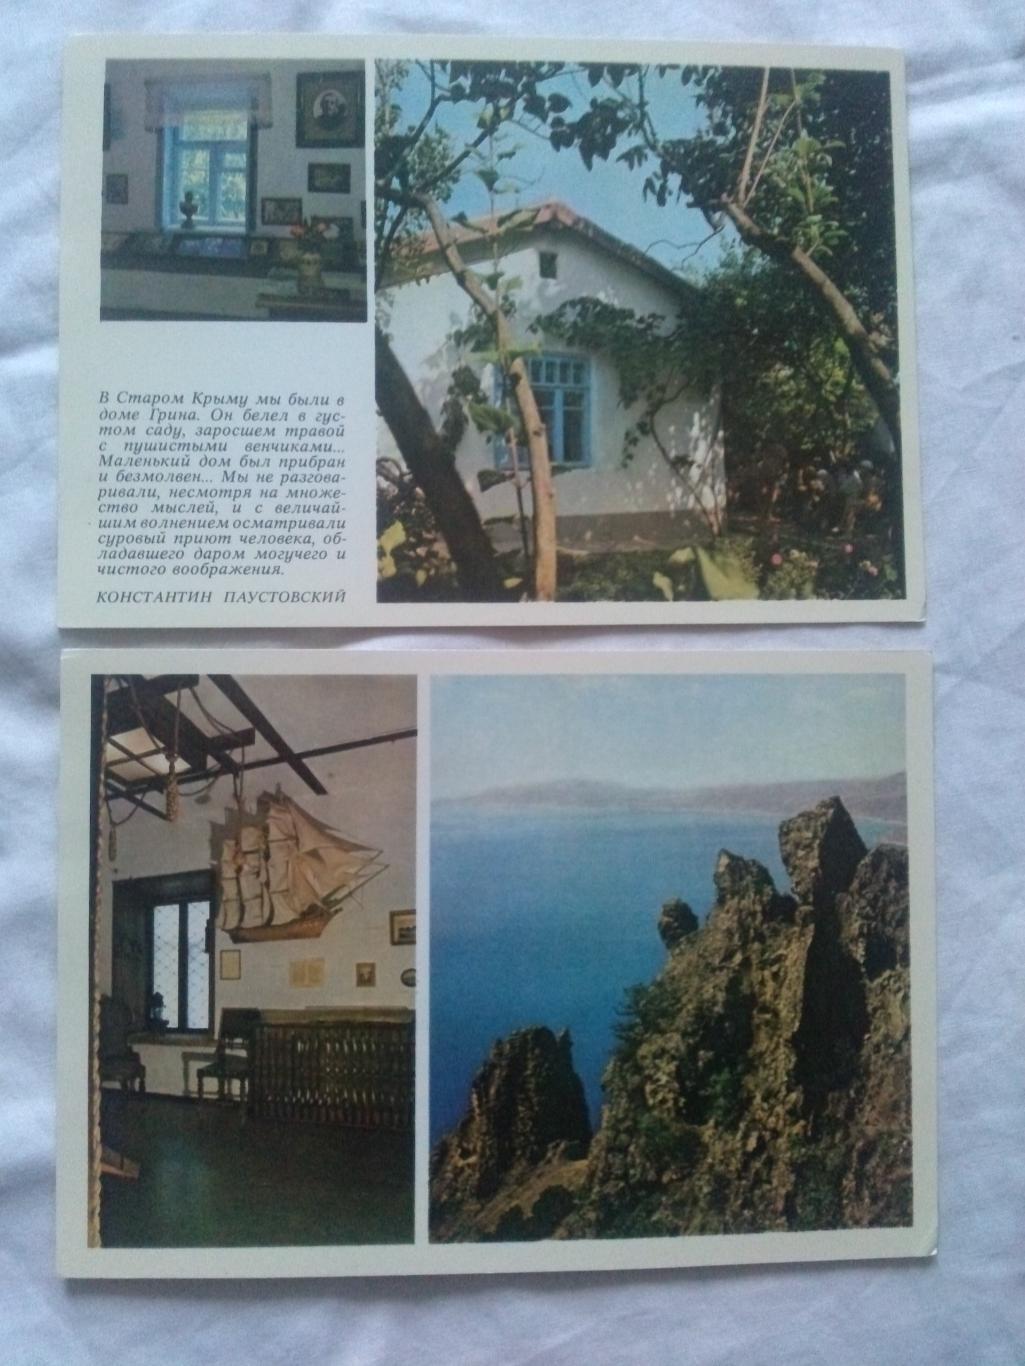 А.С. Грин - поэт мечты , романтики и моря 1981 г. полный набор - 8 открыток 5